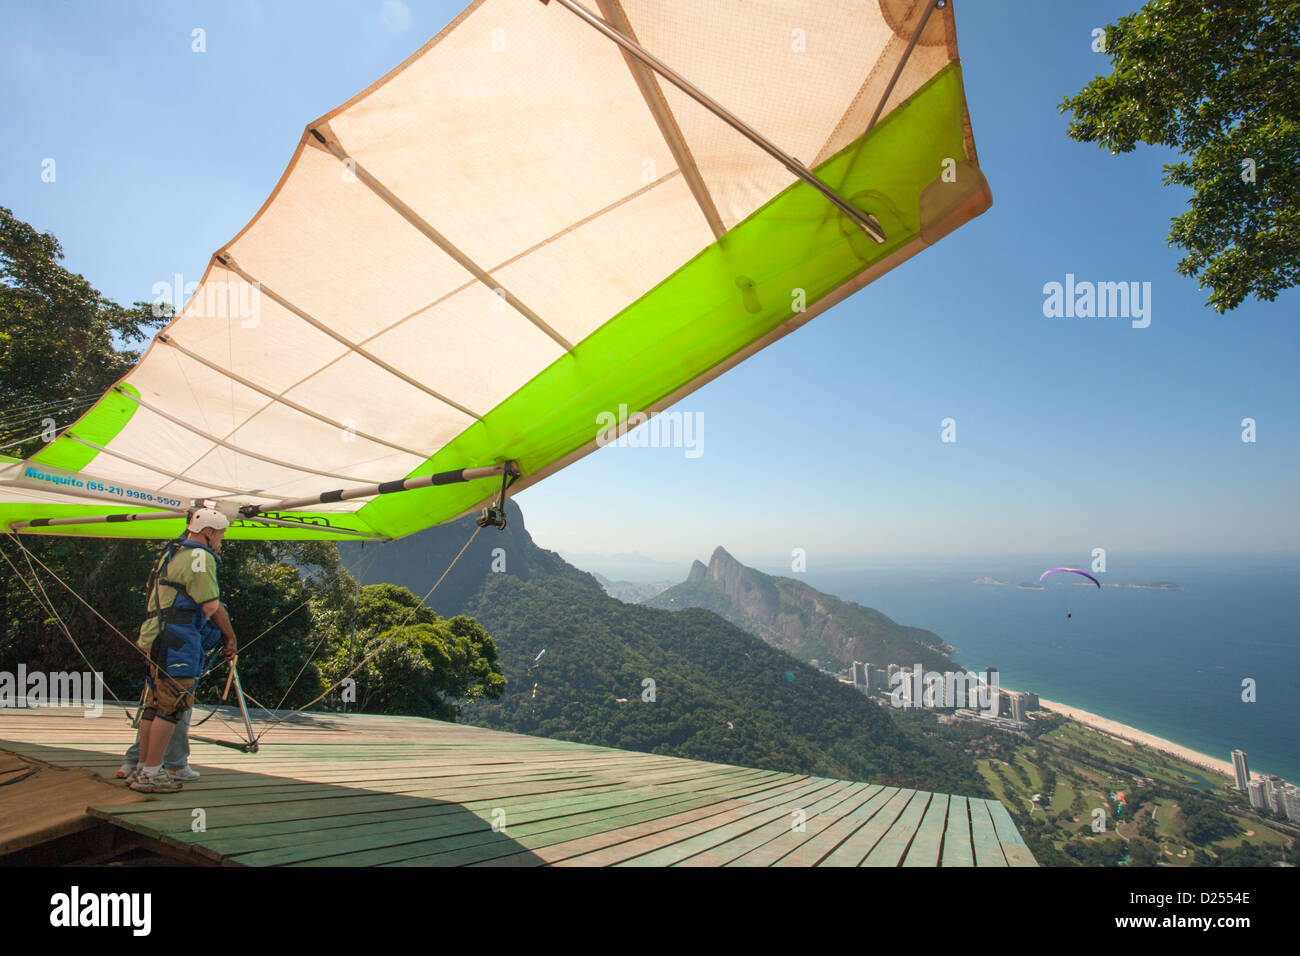 Brésil, Rio, forêt de Tijuca, deltaplane se préparant à partir à Pedra Bonita rock au-dessus de la plage de Sao Conrado. Vue sur la plage et l'océan Atlantique Banque D'Images